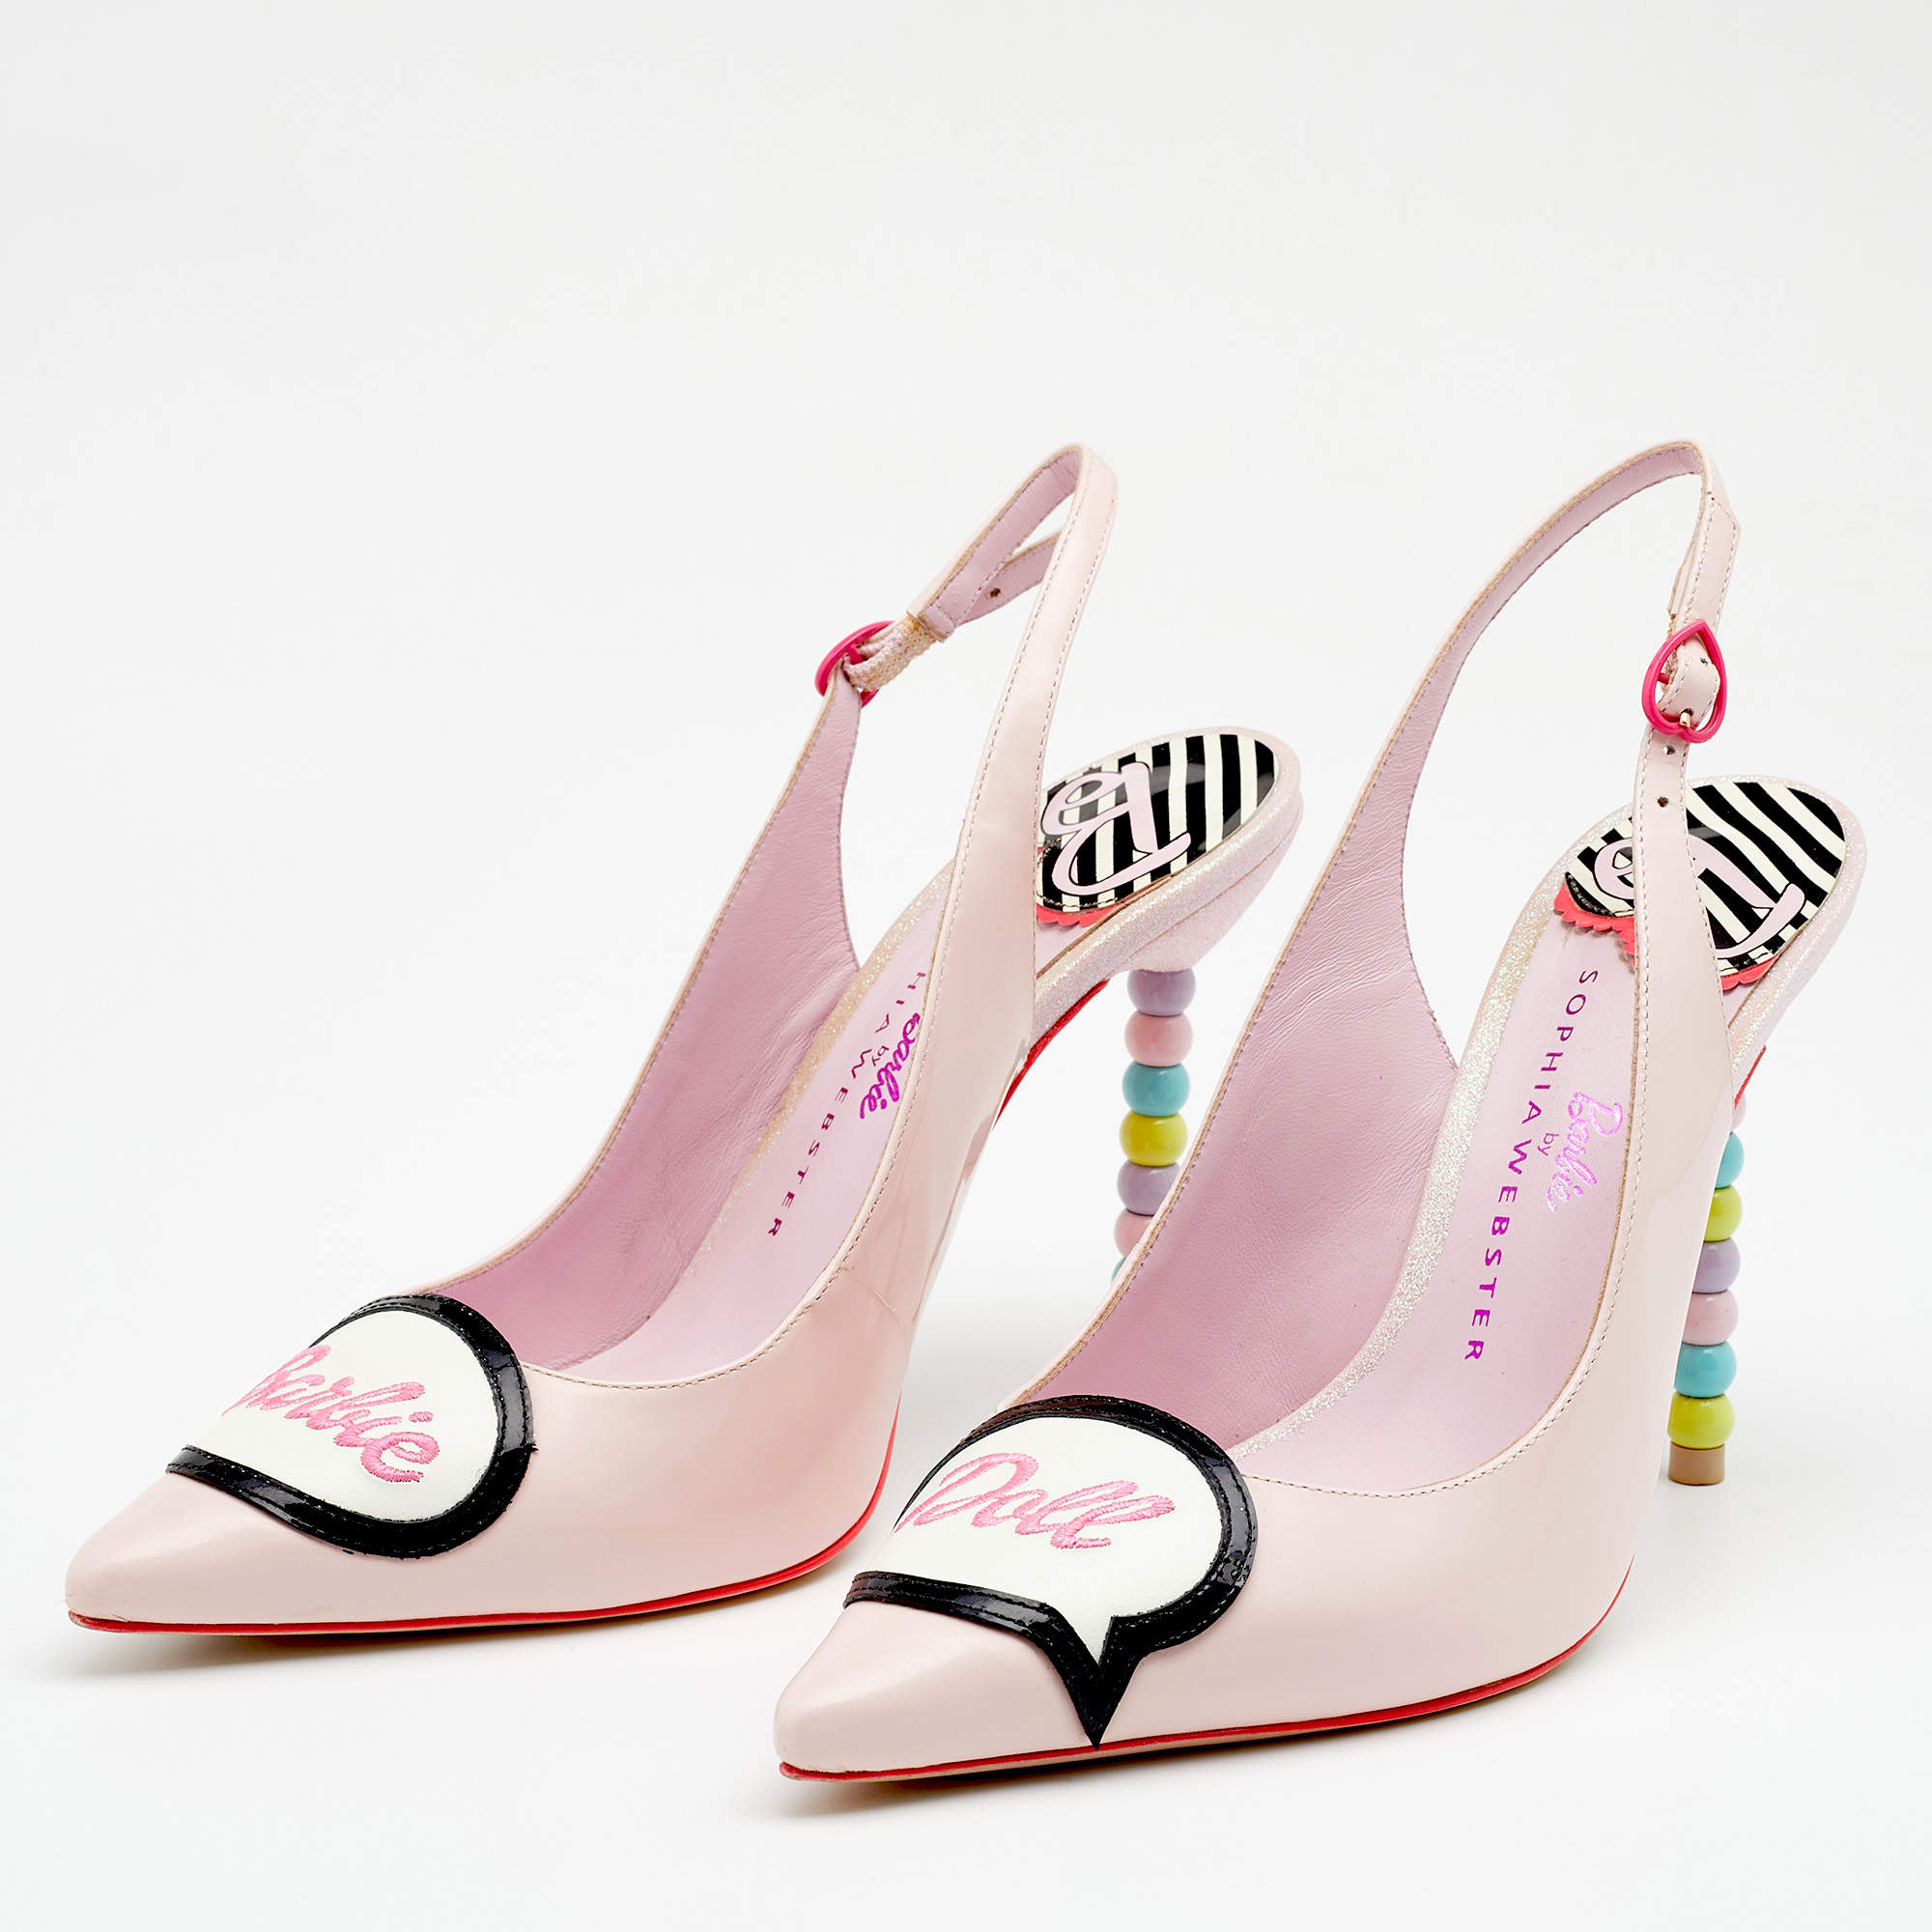 Sophia Webster imagine des chaussures ​Barbie® pour adultes  Chaussures  barbie, Chaussures papillon, Collection de chaussures